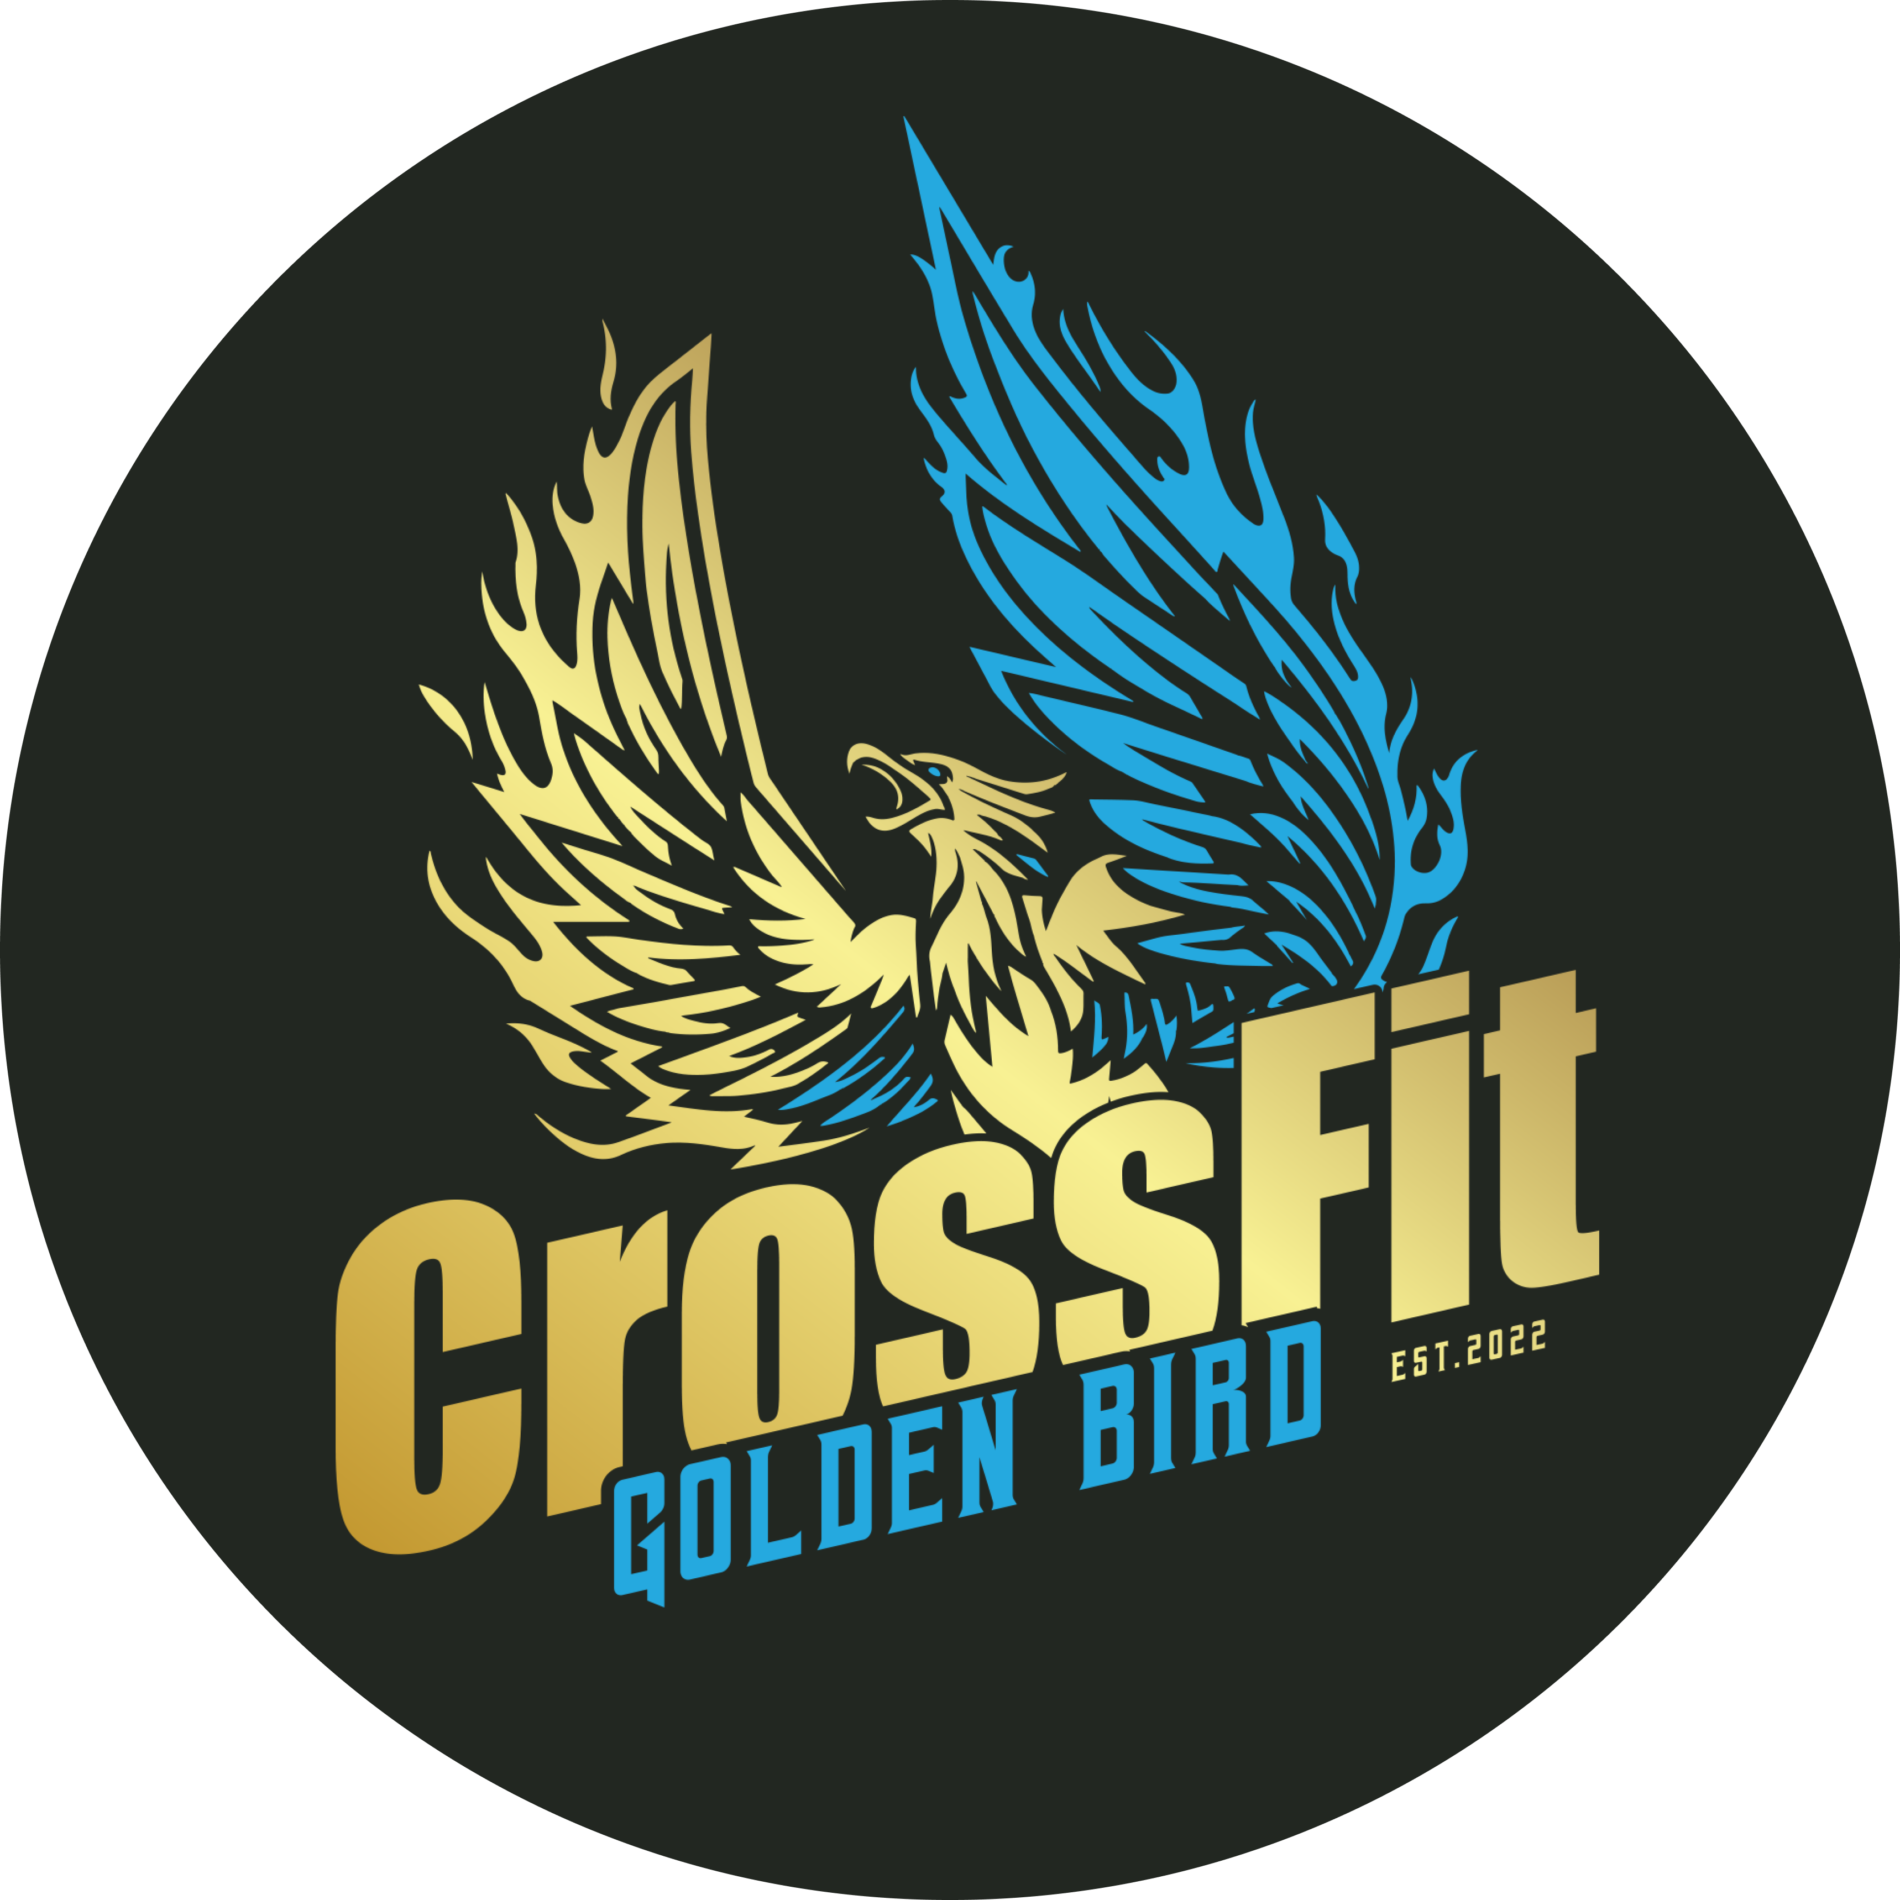 CrossFit Golden Bird